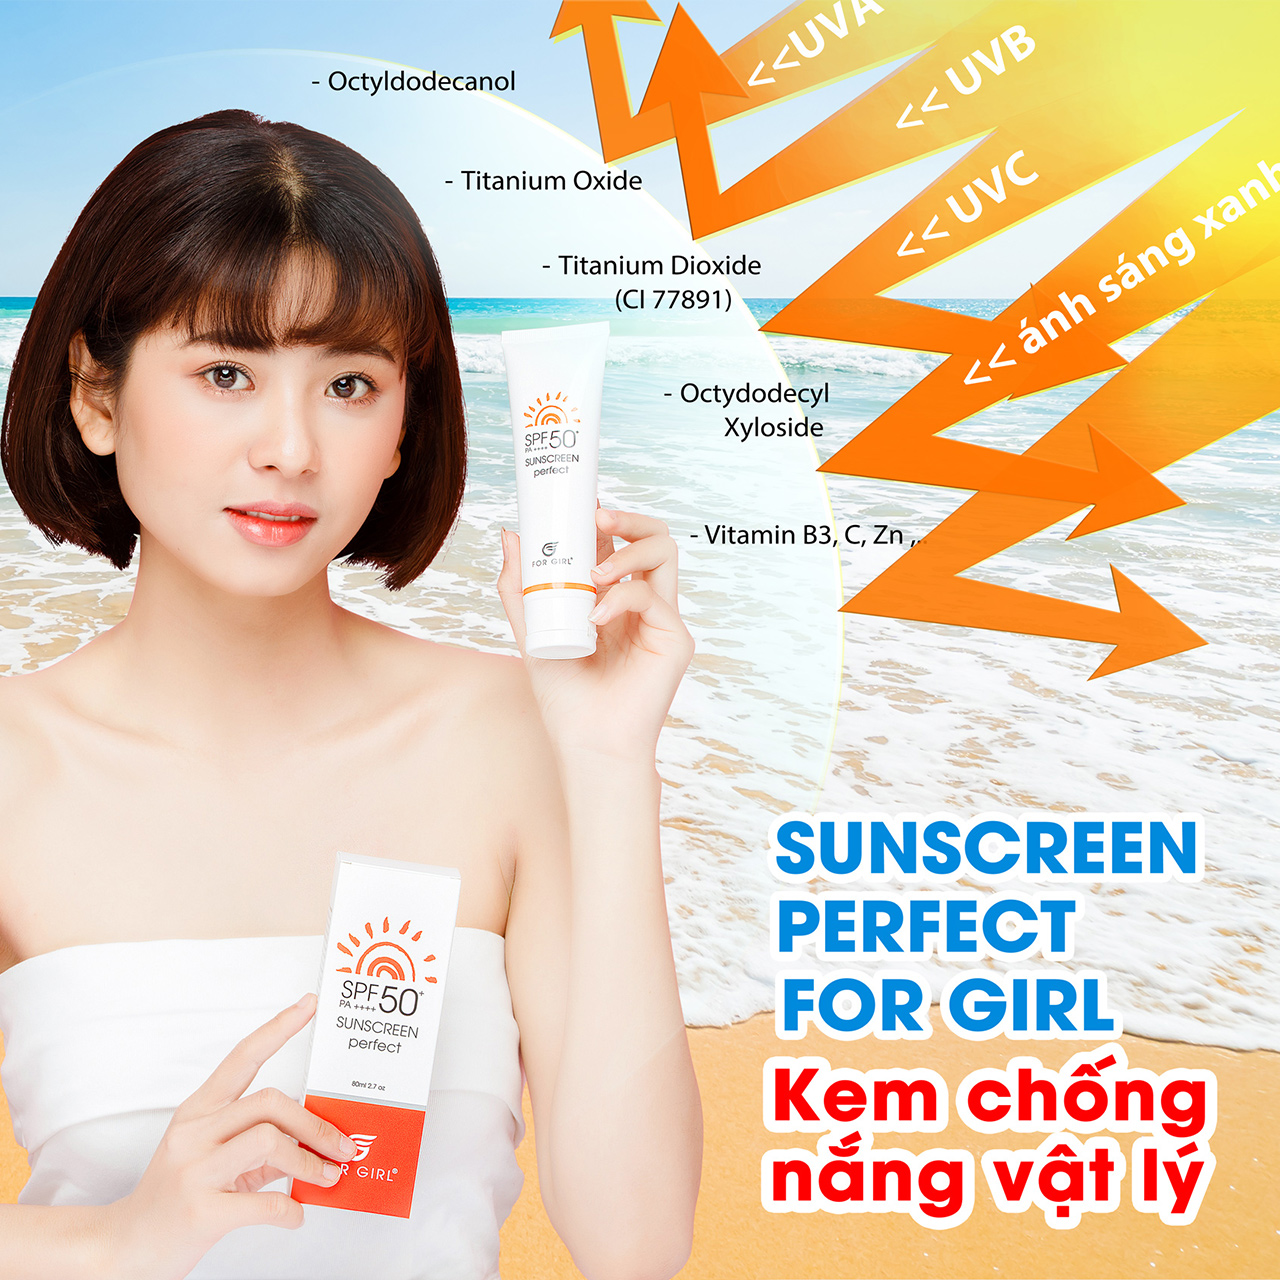 Sunscreen Perfect For Girl kem chống nắng vật lý